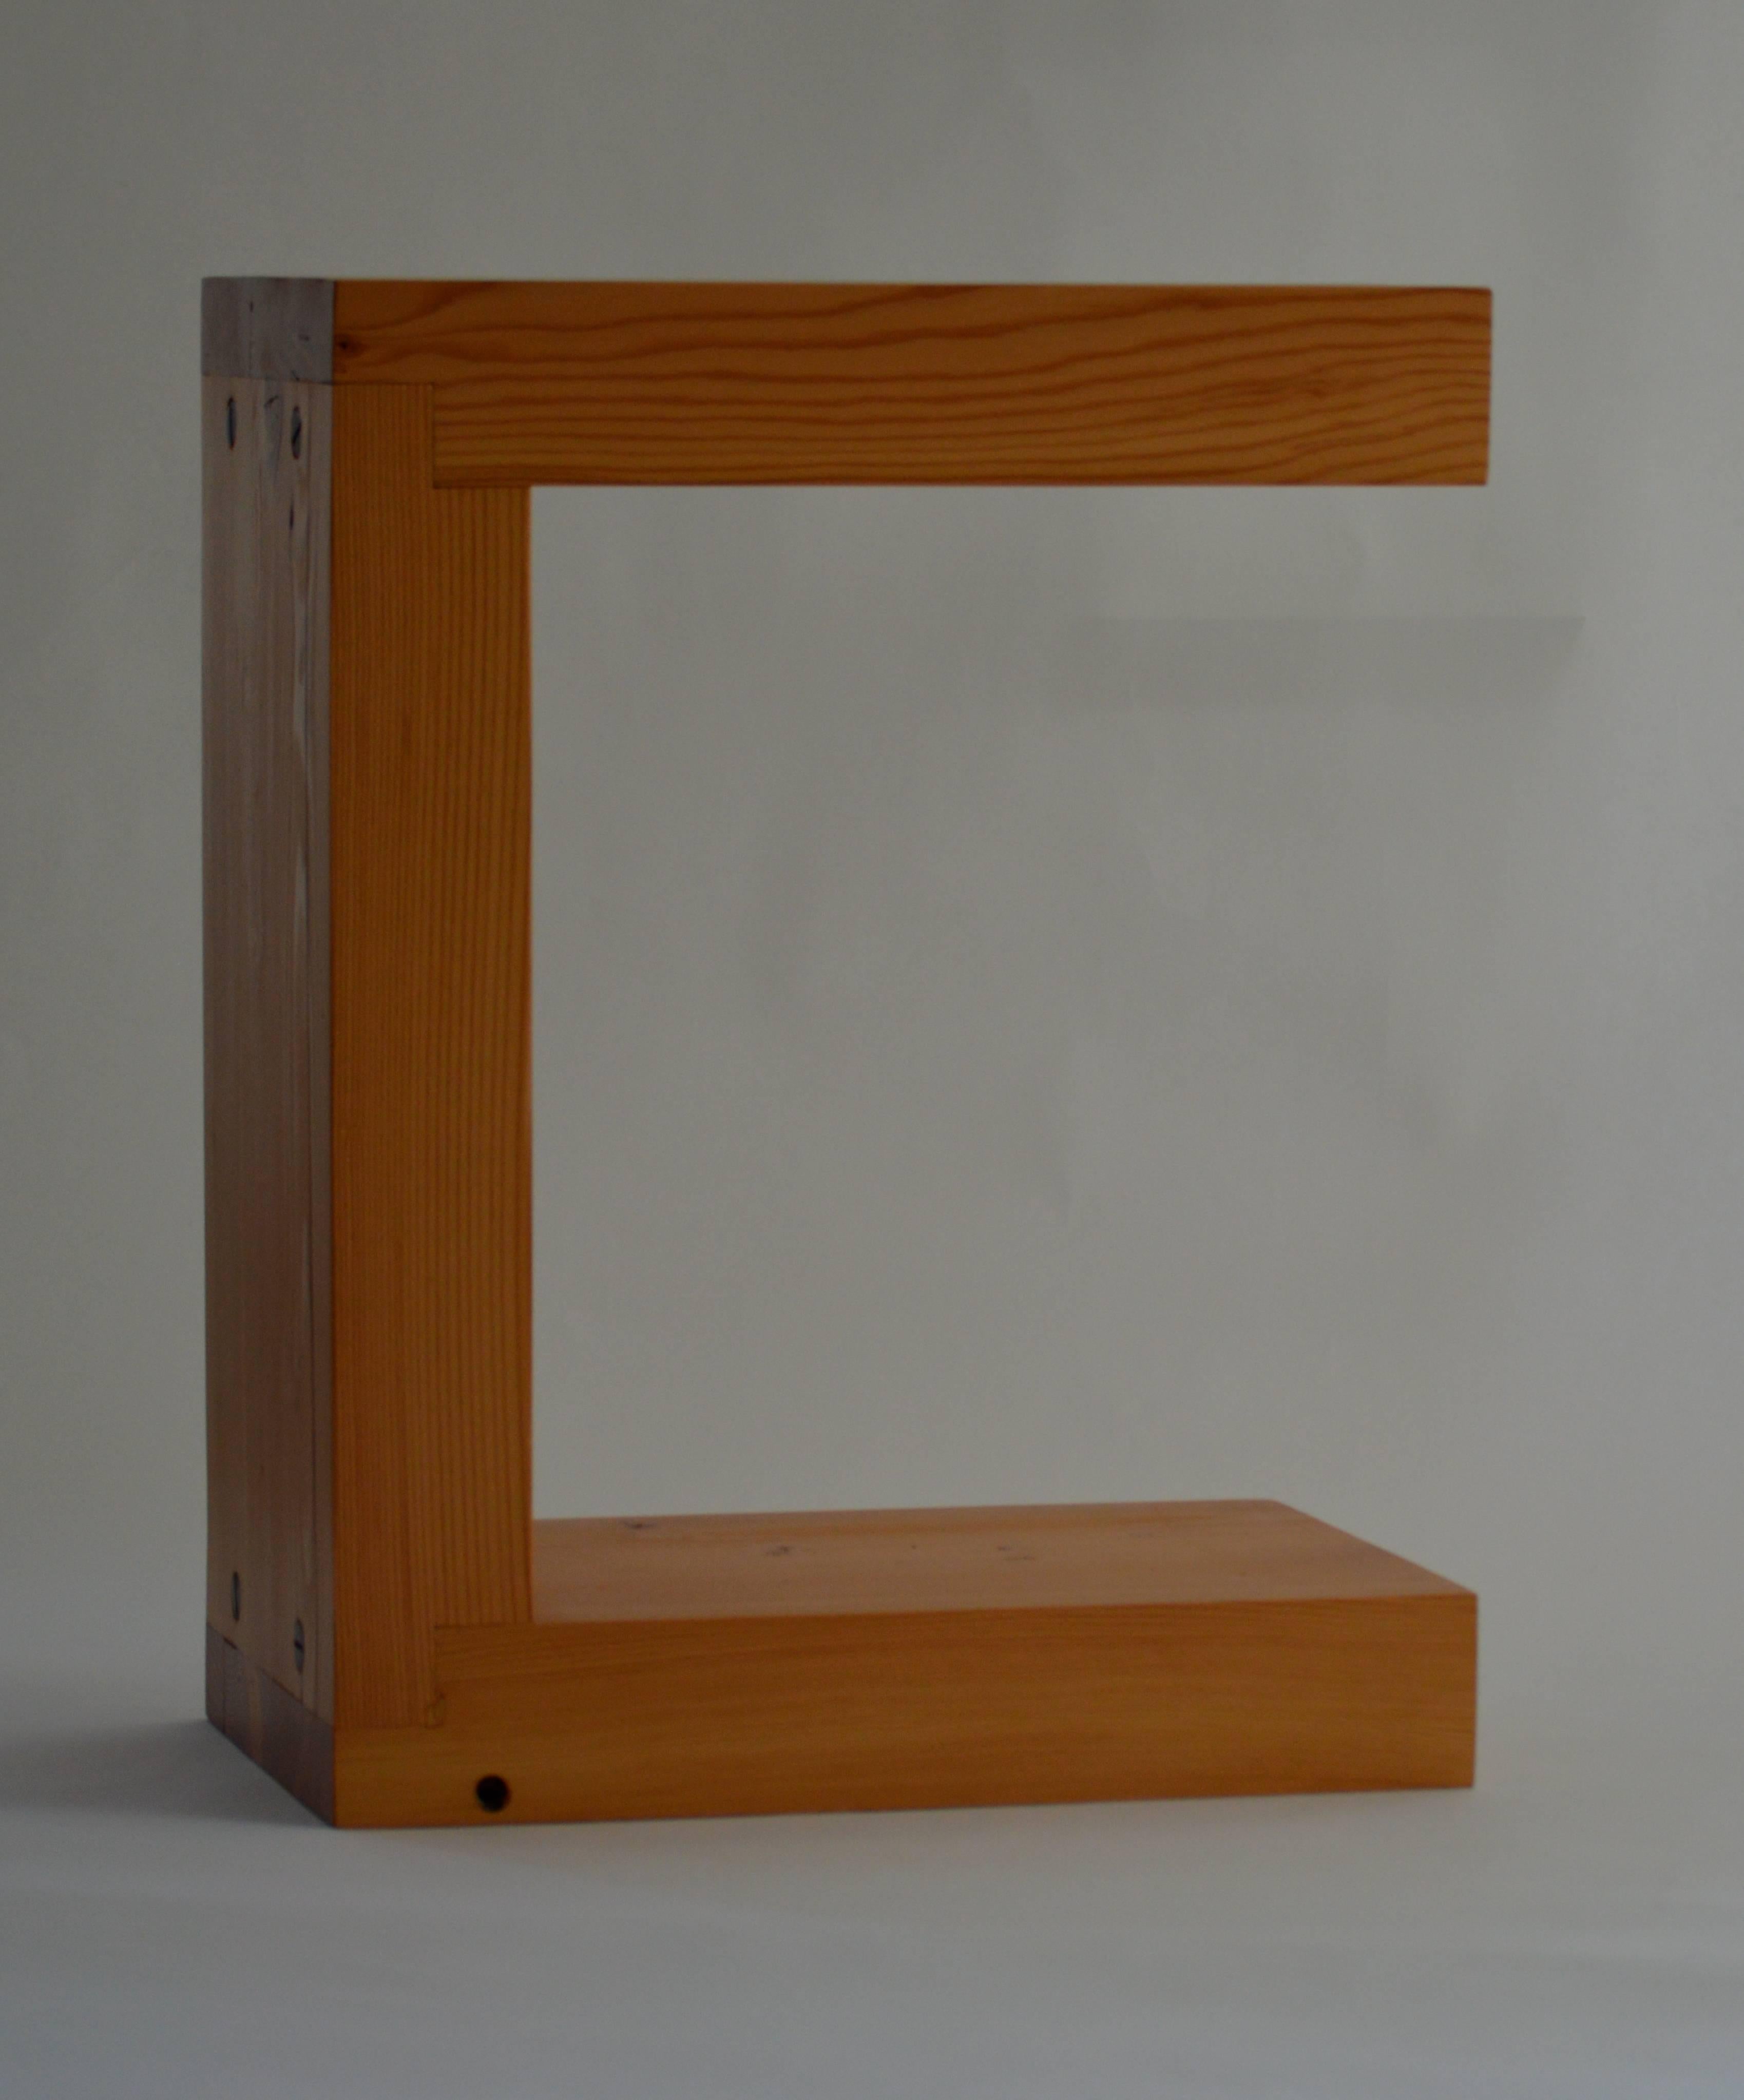 La table d'extrémité Fir, un design original proposé en exclusivité par Vermontica, est une table d'assise ou d'appoint contemporaine minimaliste conçue et produite dans le Vermont par Scott Gordon. Fabriquée en sapin douglas de 3 pouces d'épaisseur